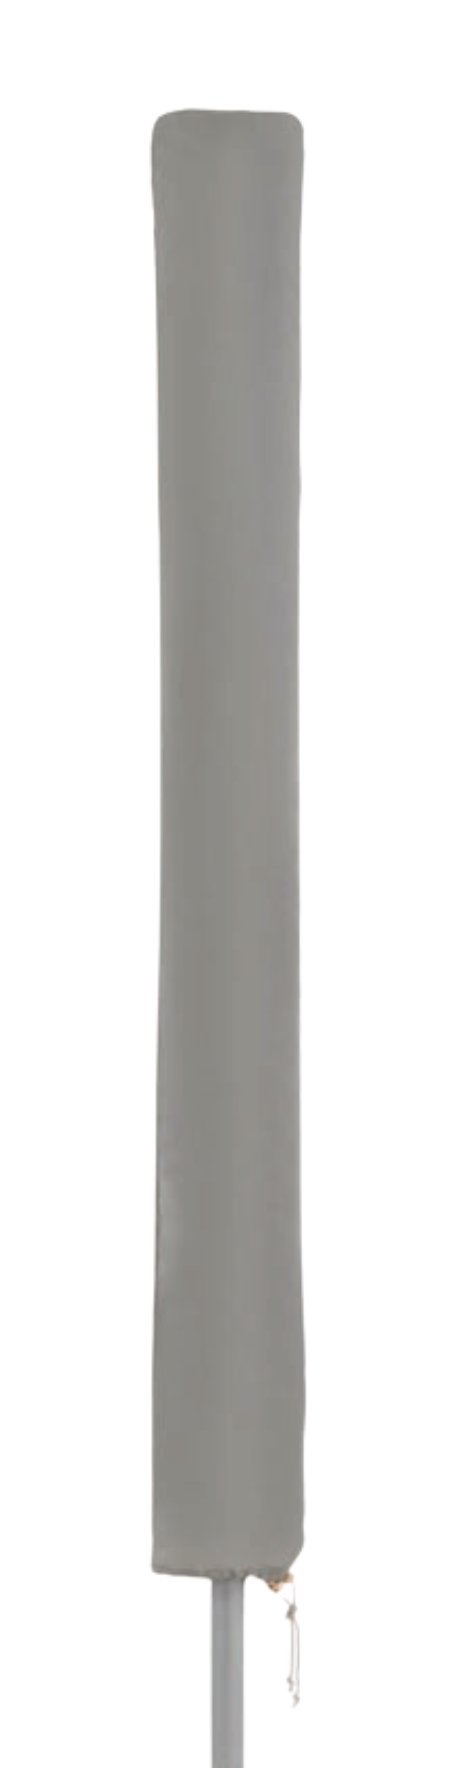 DOPPLER Schirmhülle Basic 350 cm, mittel